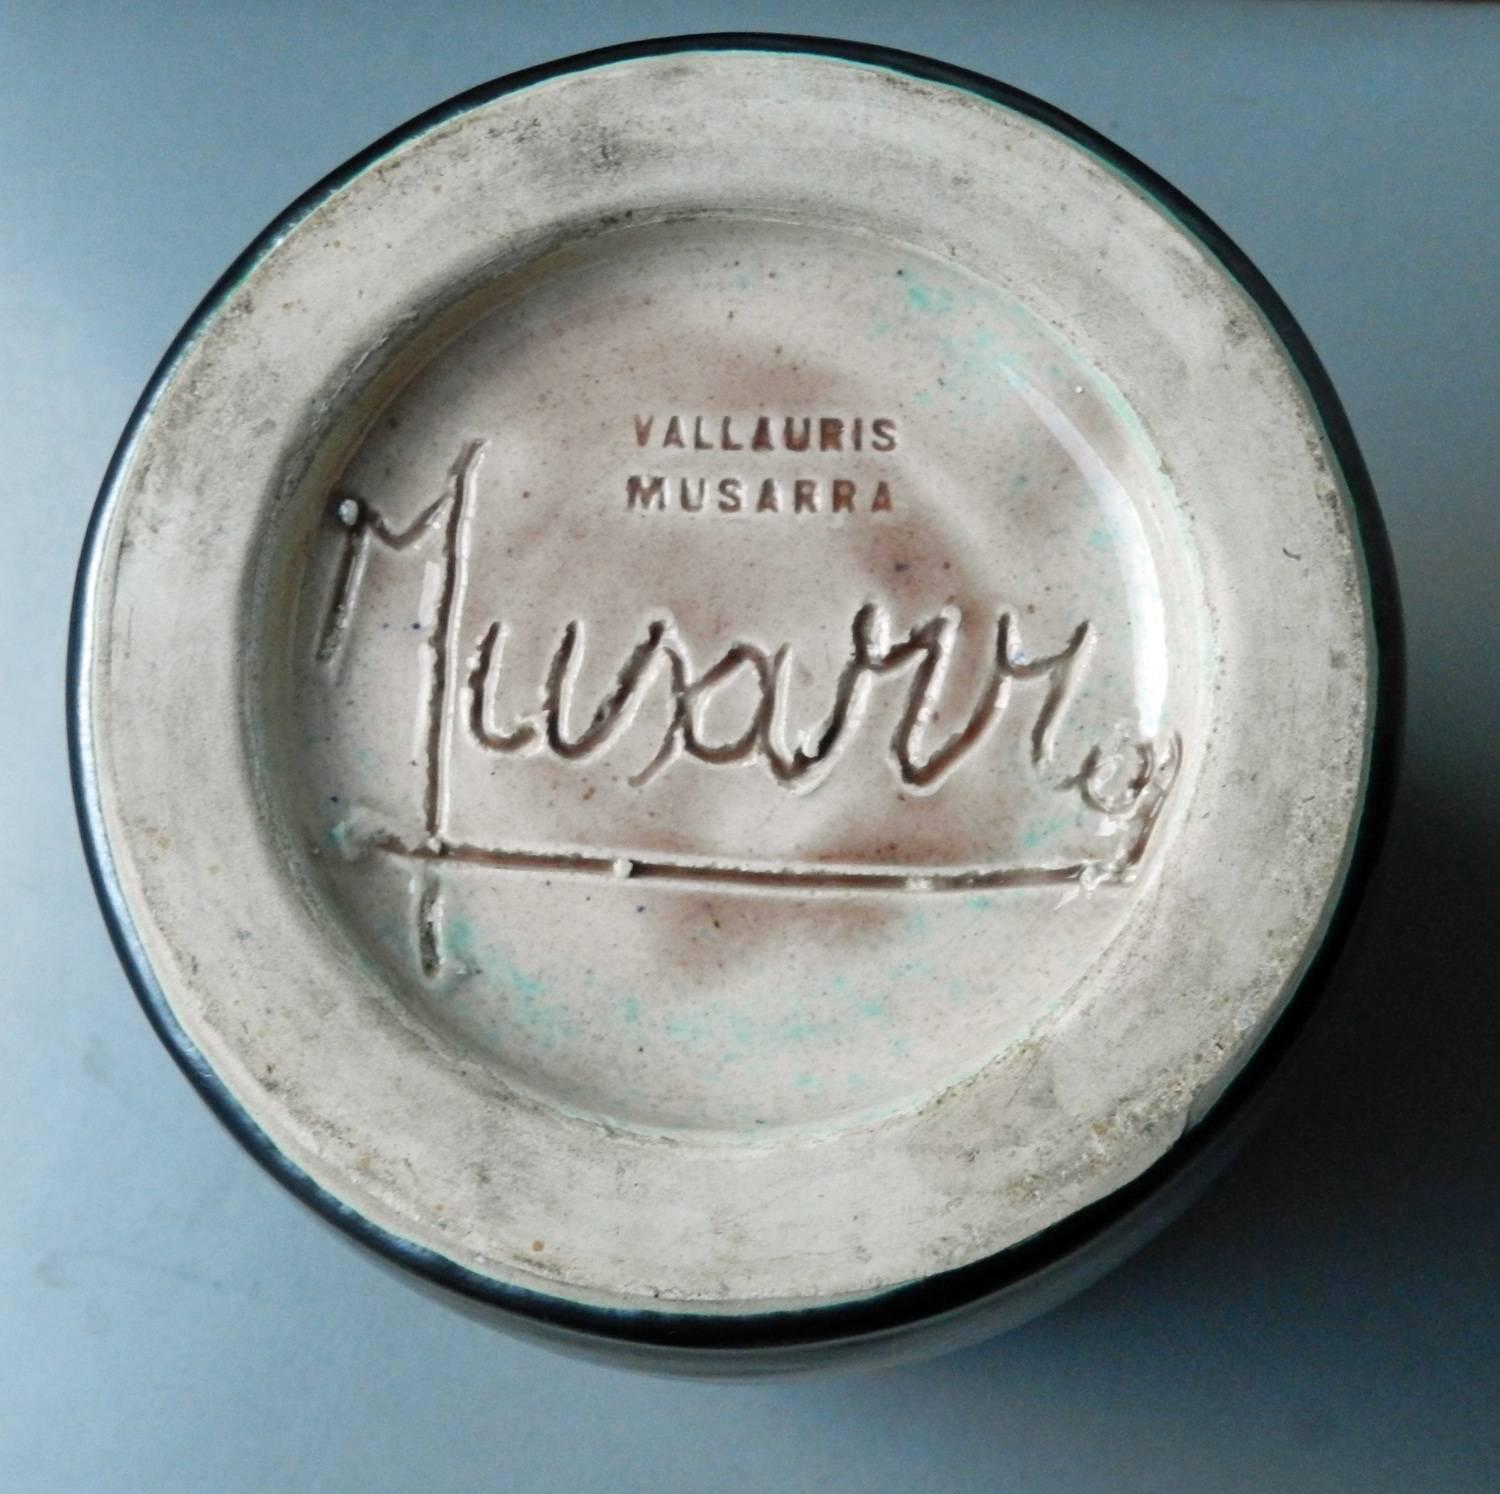 French Musarra, Vallauris, Ceramic Vase, 1960